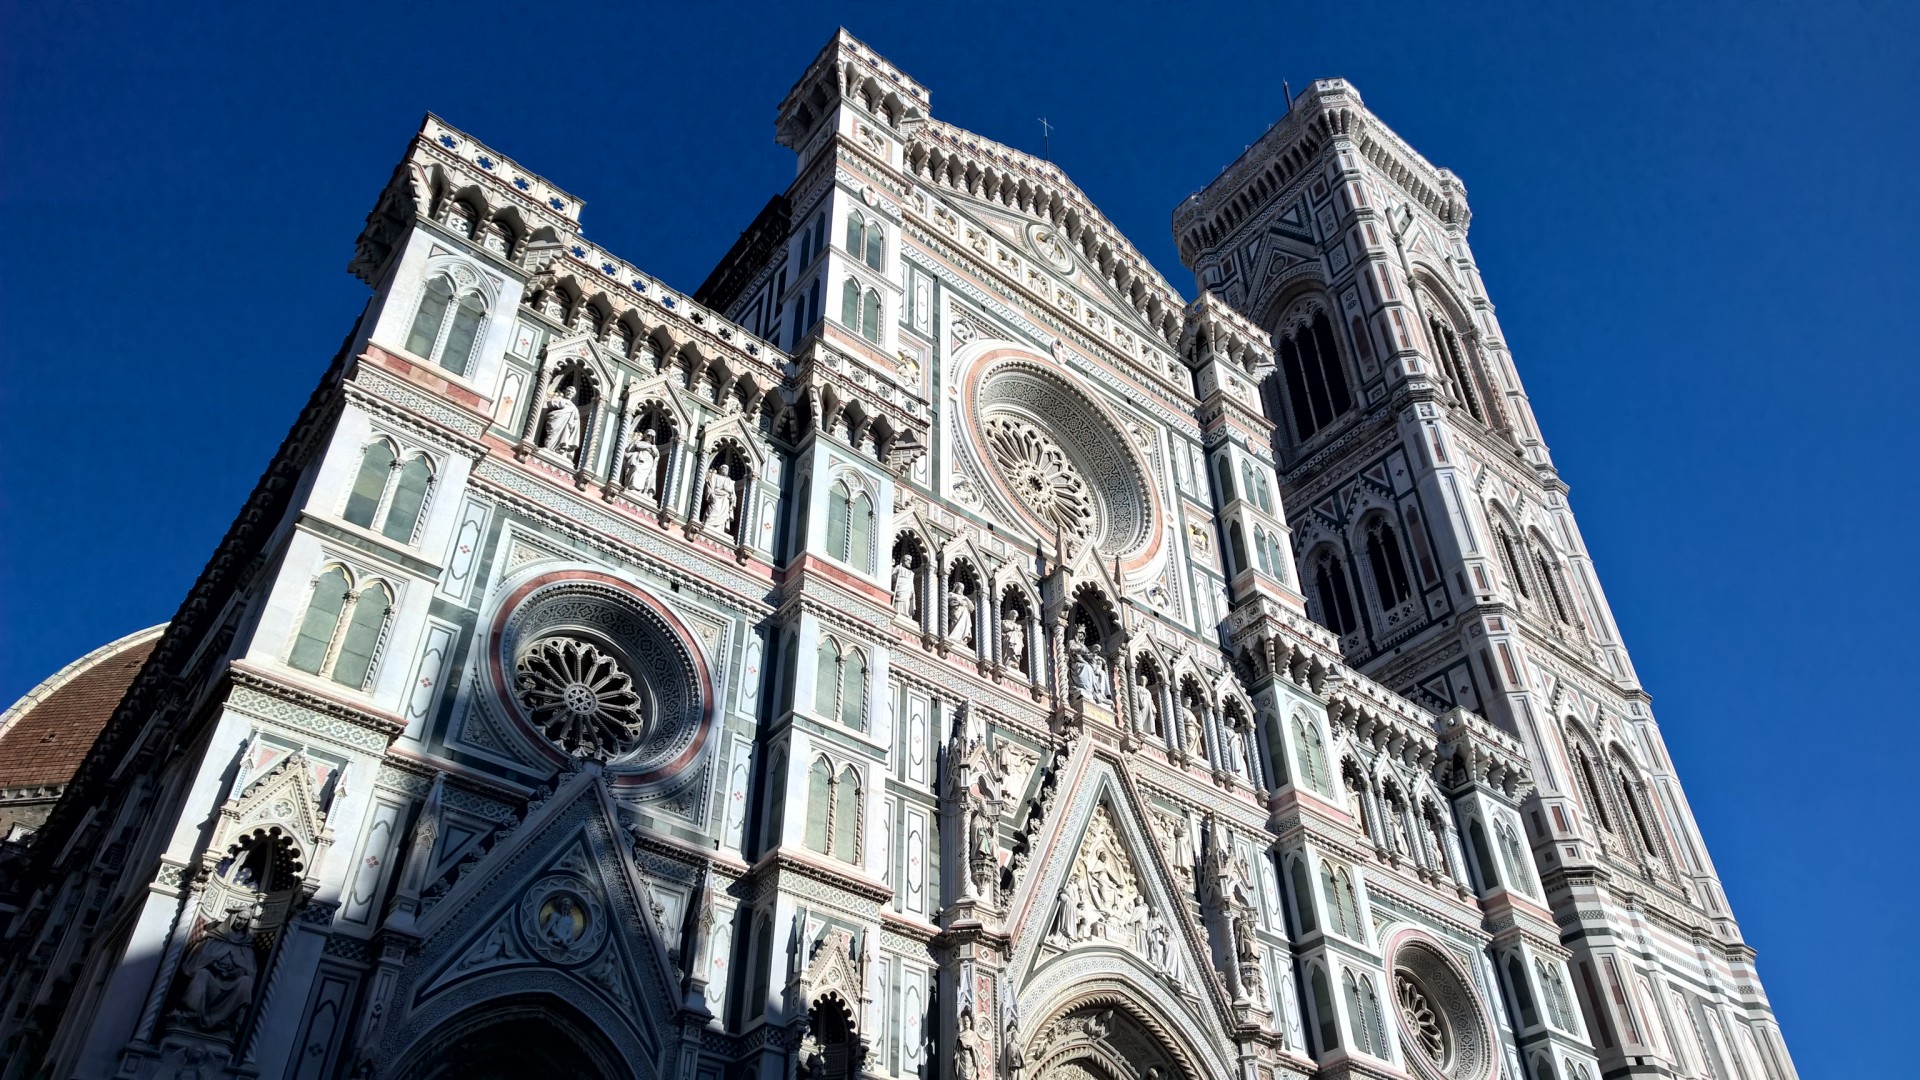 Il 24 giugno per la festa del patrono di Firenze Musica Sacra in Cattedrale